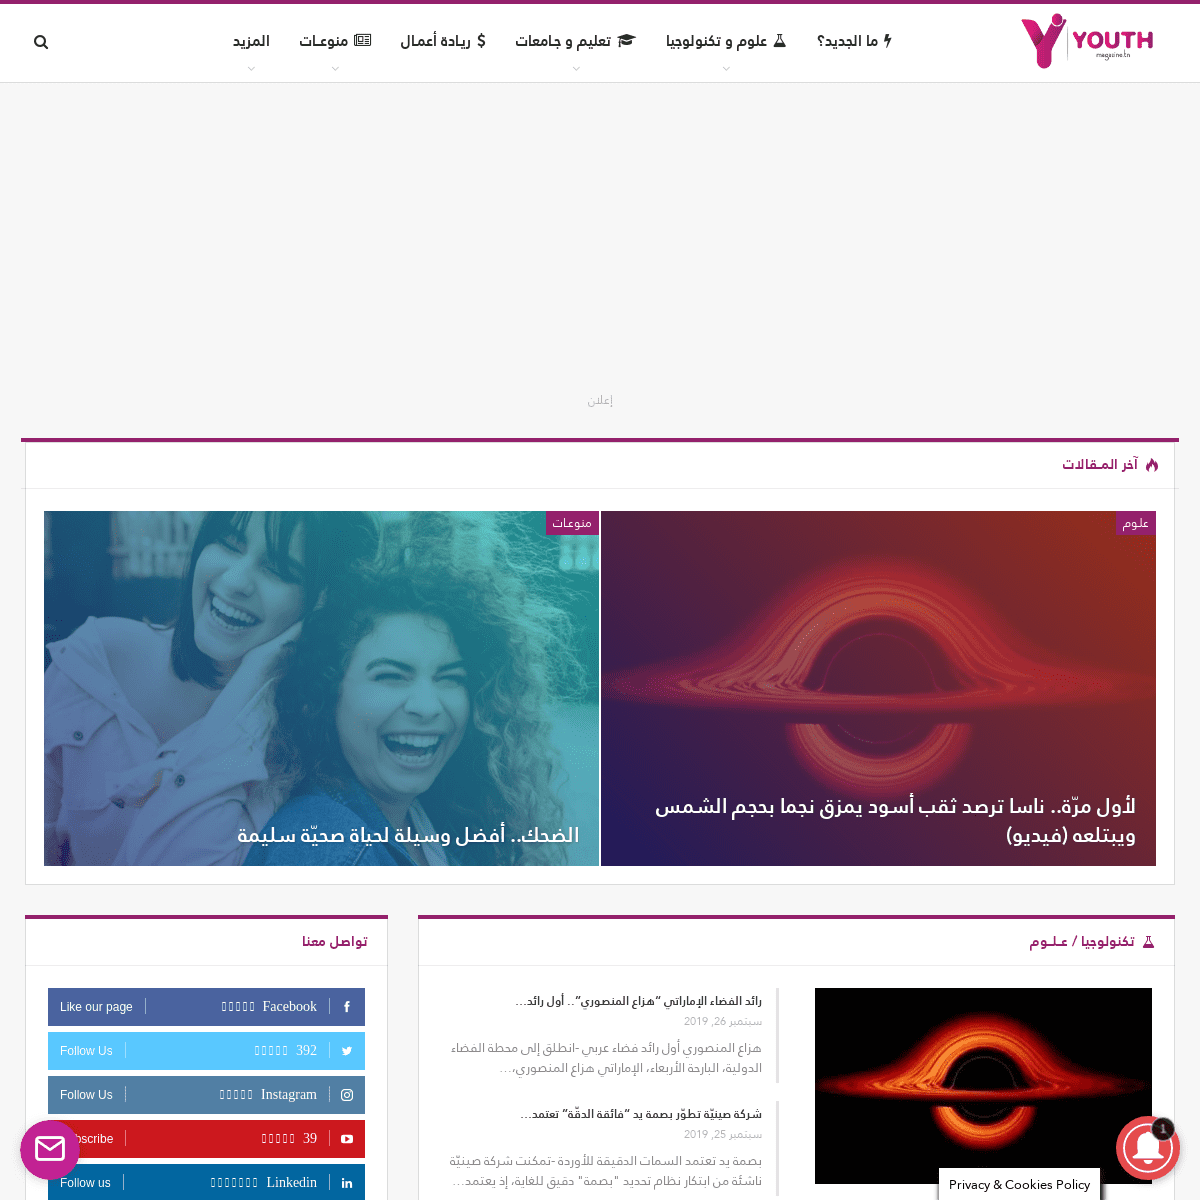 أوّل مجلّة موجهة للشباب في تونس | YOUTH Magazine